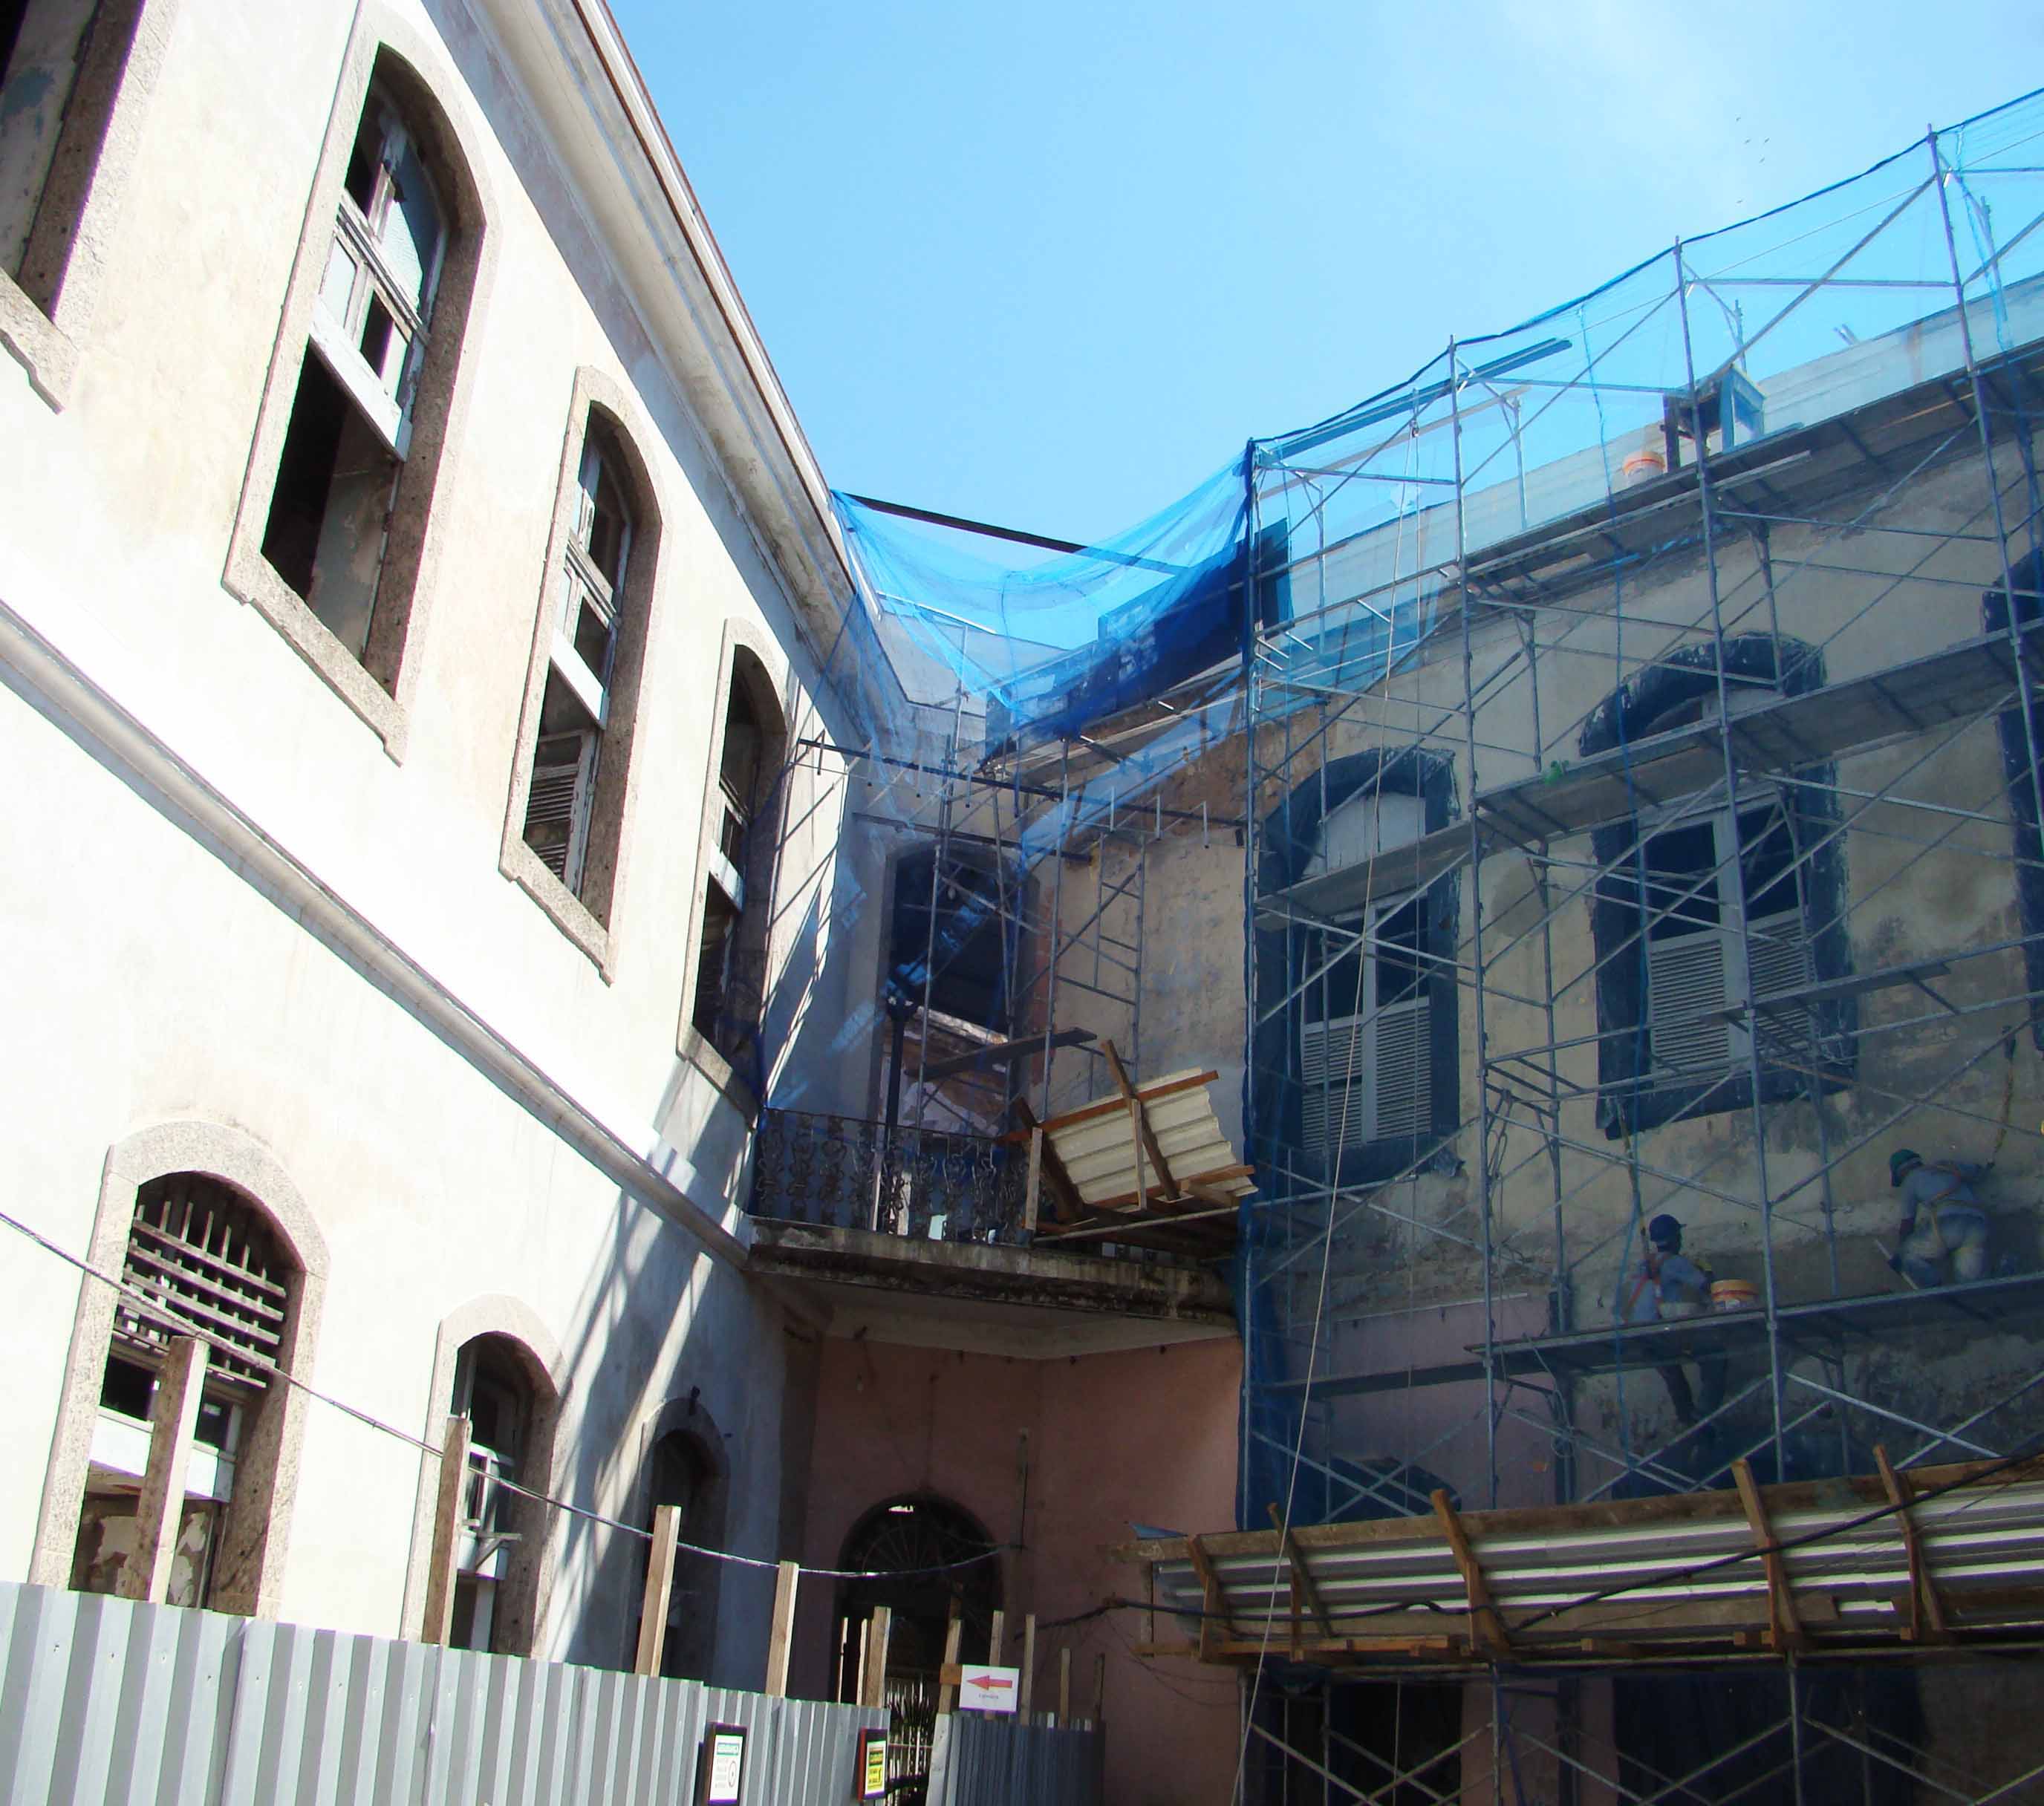 Prédio 2 em construção e fachada 2 do prédio 3 - 23/01/2014